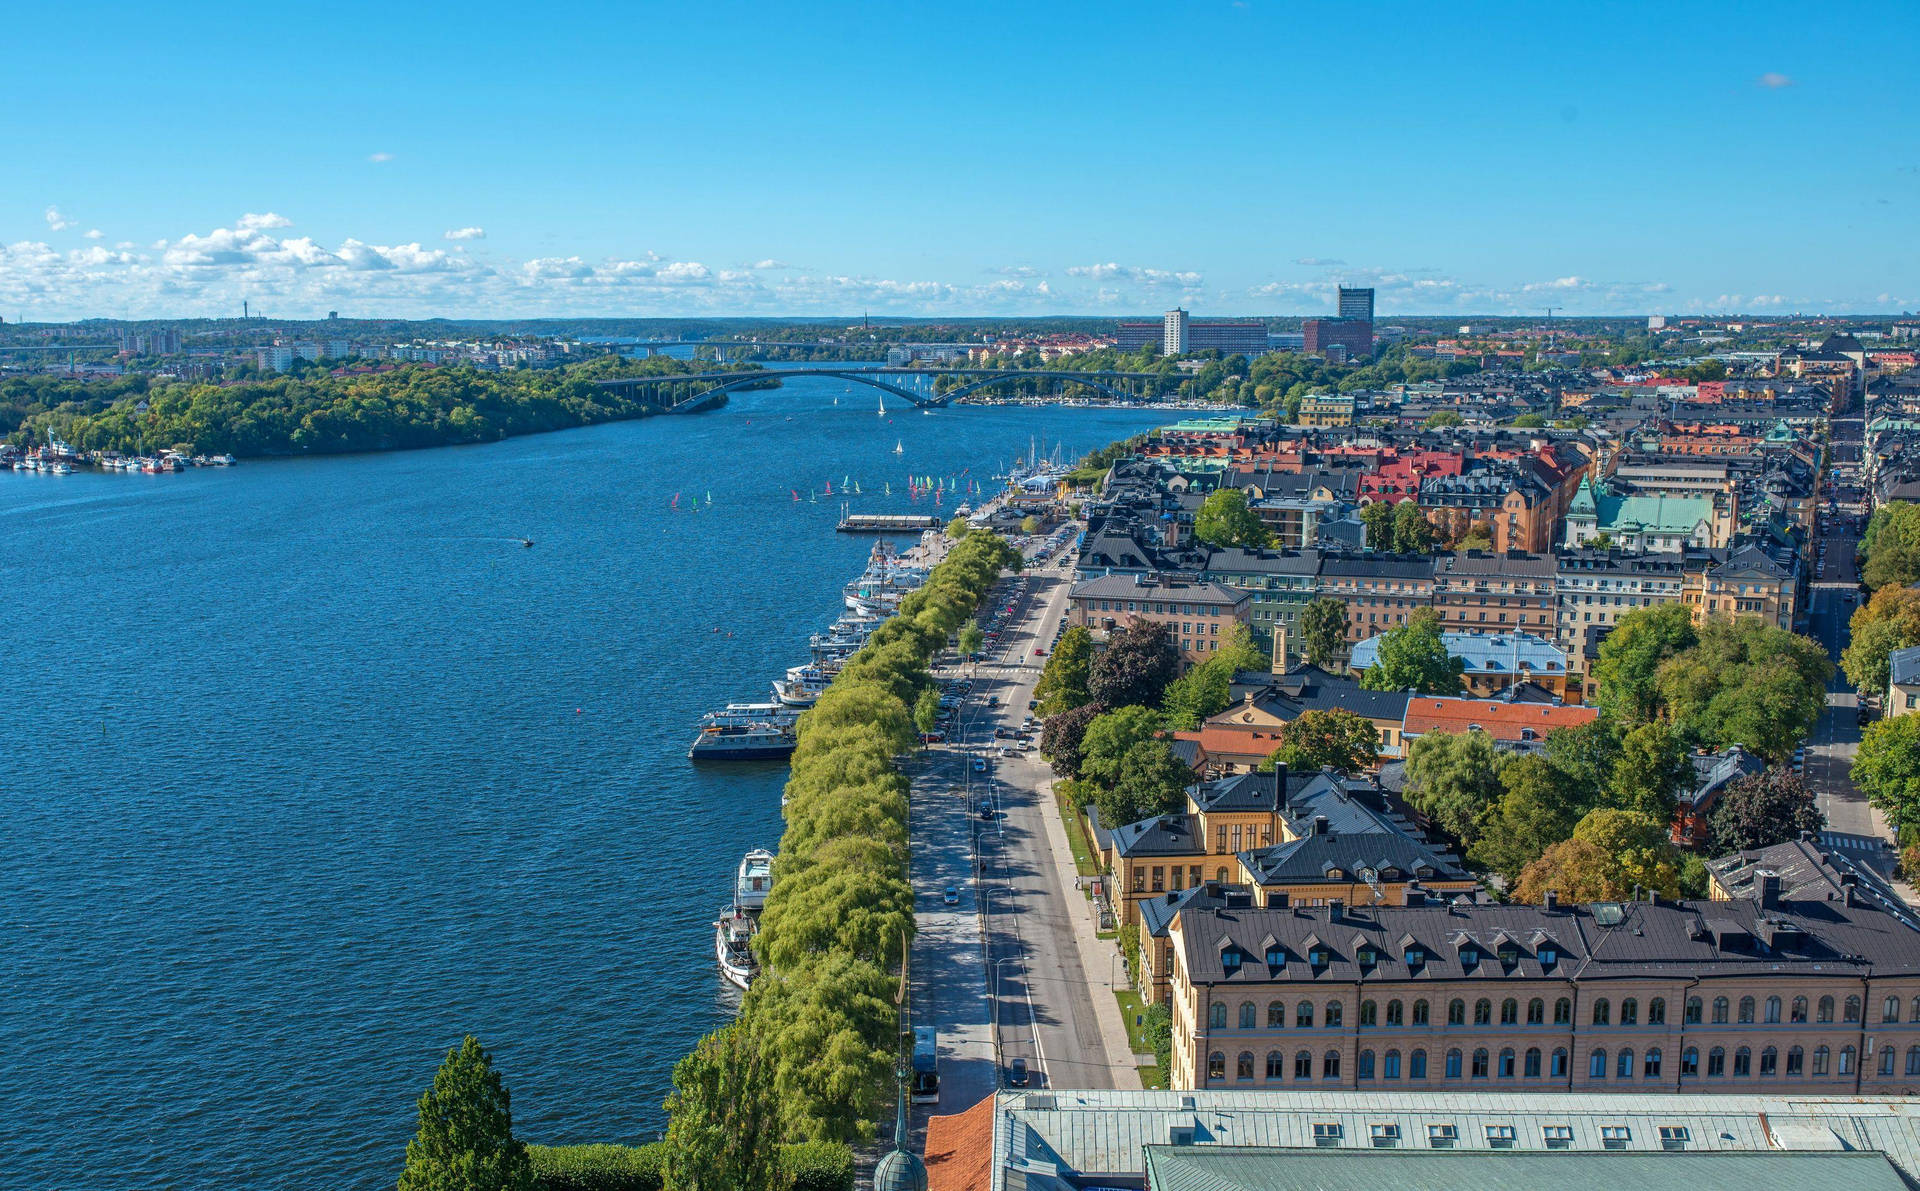 Vistaaerea Di Stoccolma Centrale Sfondo